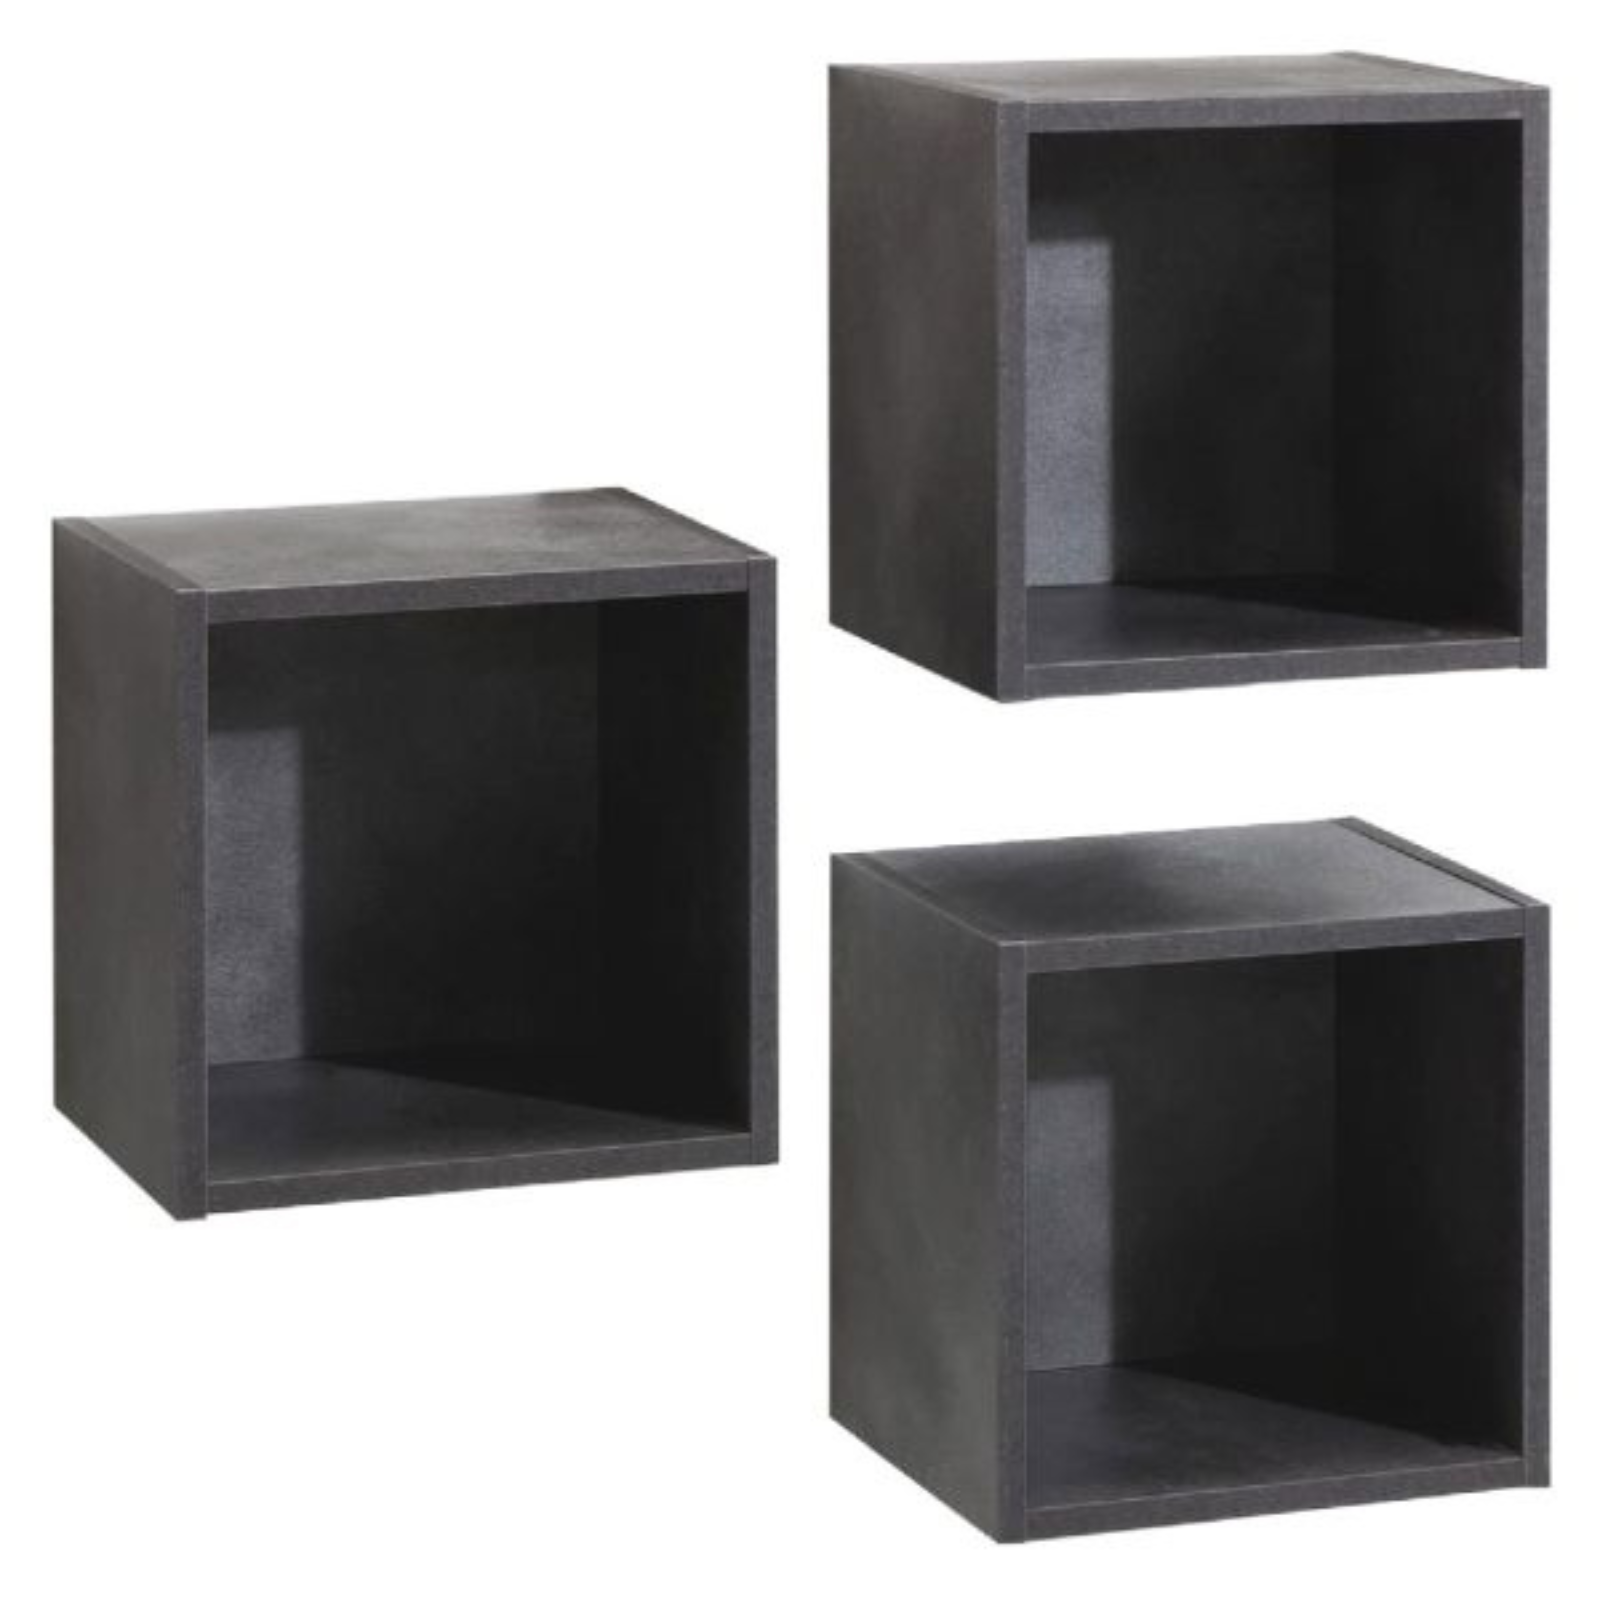 Pensile a giorno cubo set 3 pezzi in nobilitato truciolare rivestito effetto finitura legno cemento